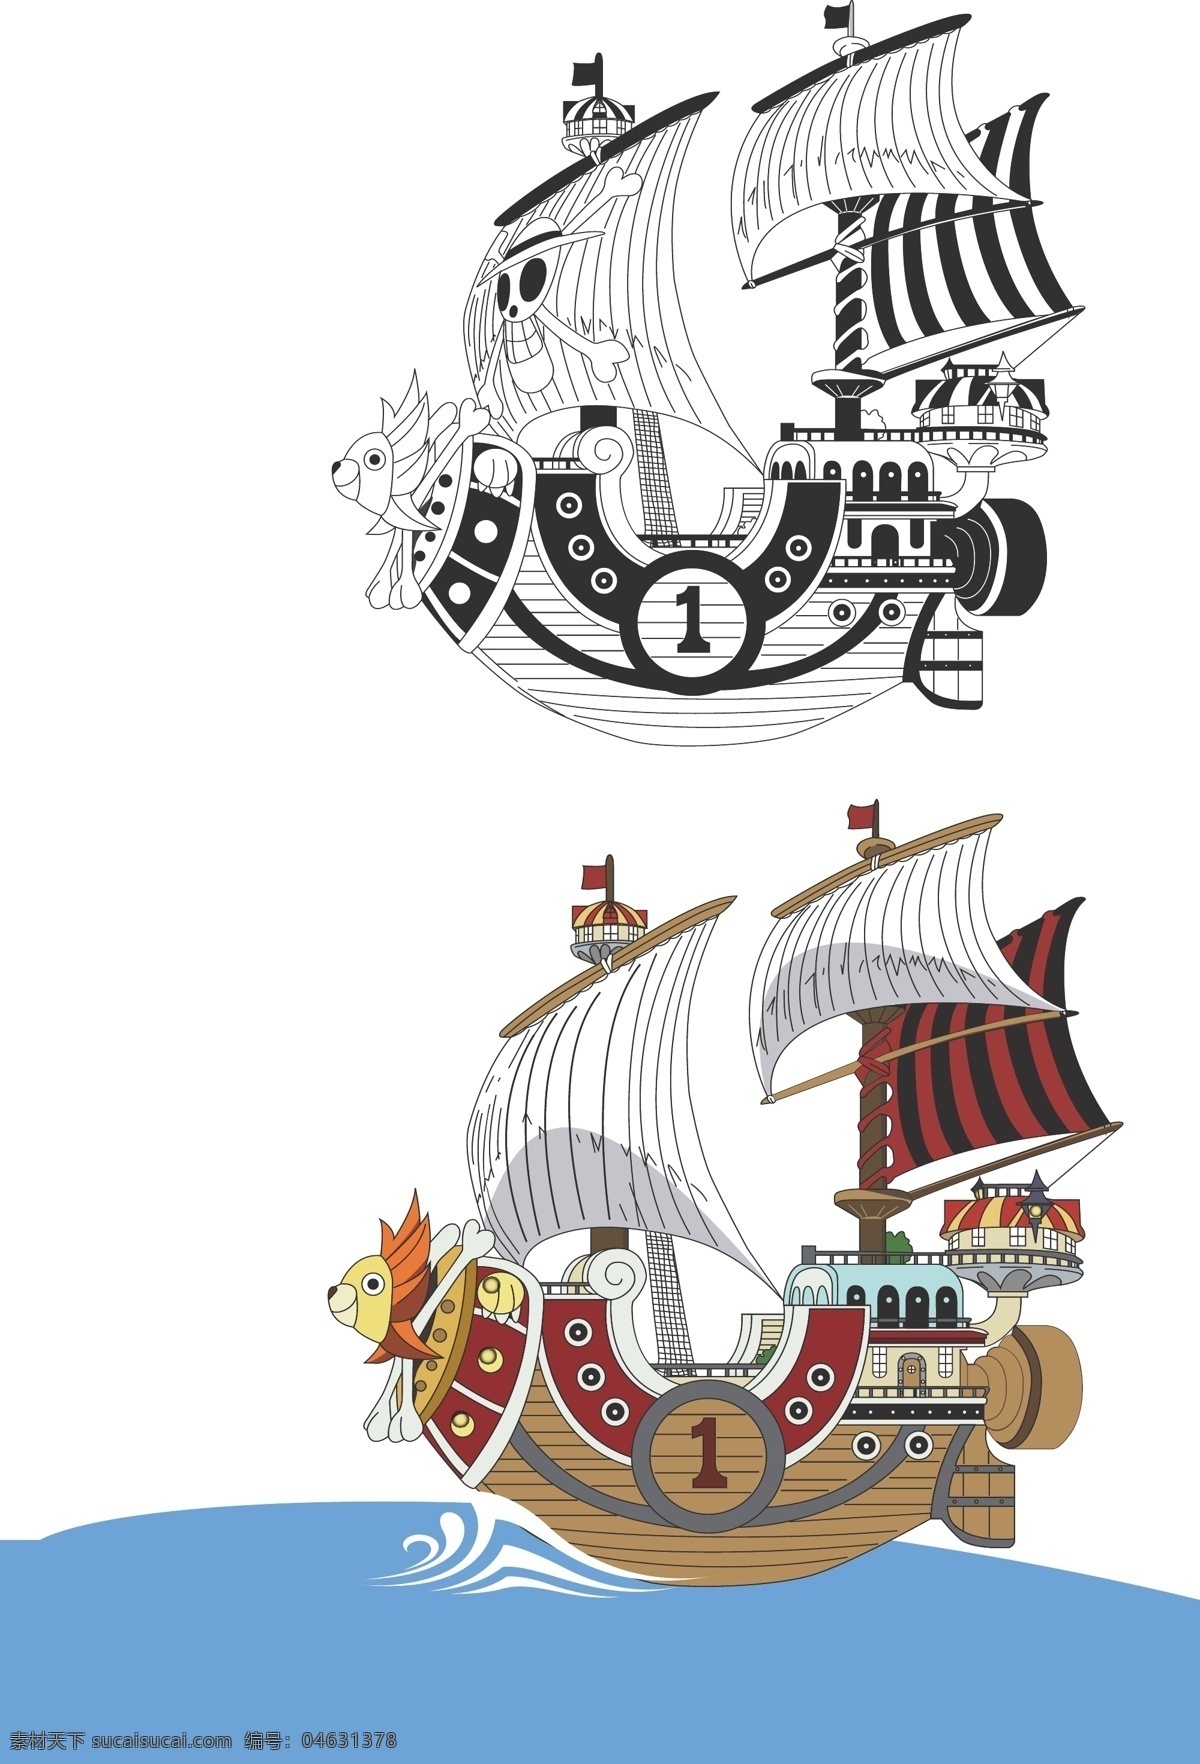 海贼王 黄金 梅利 号 矢量 上色 版 帆船 航海 黄金梅利号 太阳号 海盗船 海盗 线稿 动漫动画 动漫人物